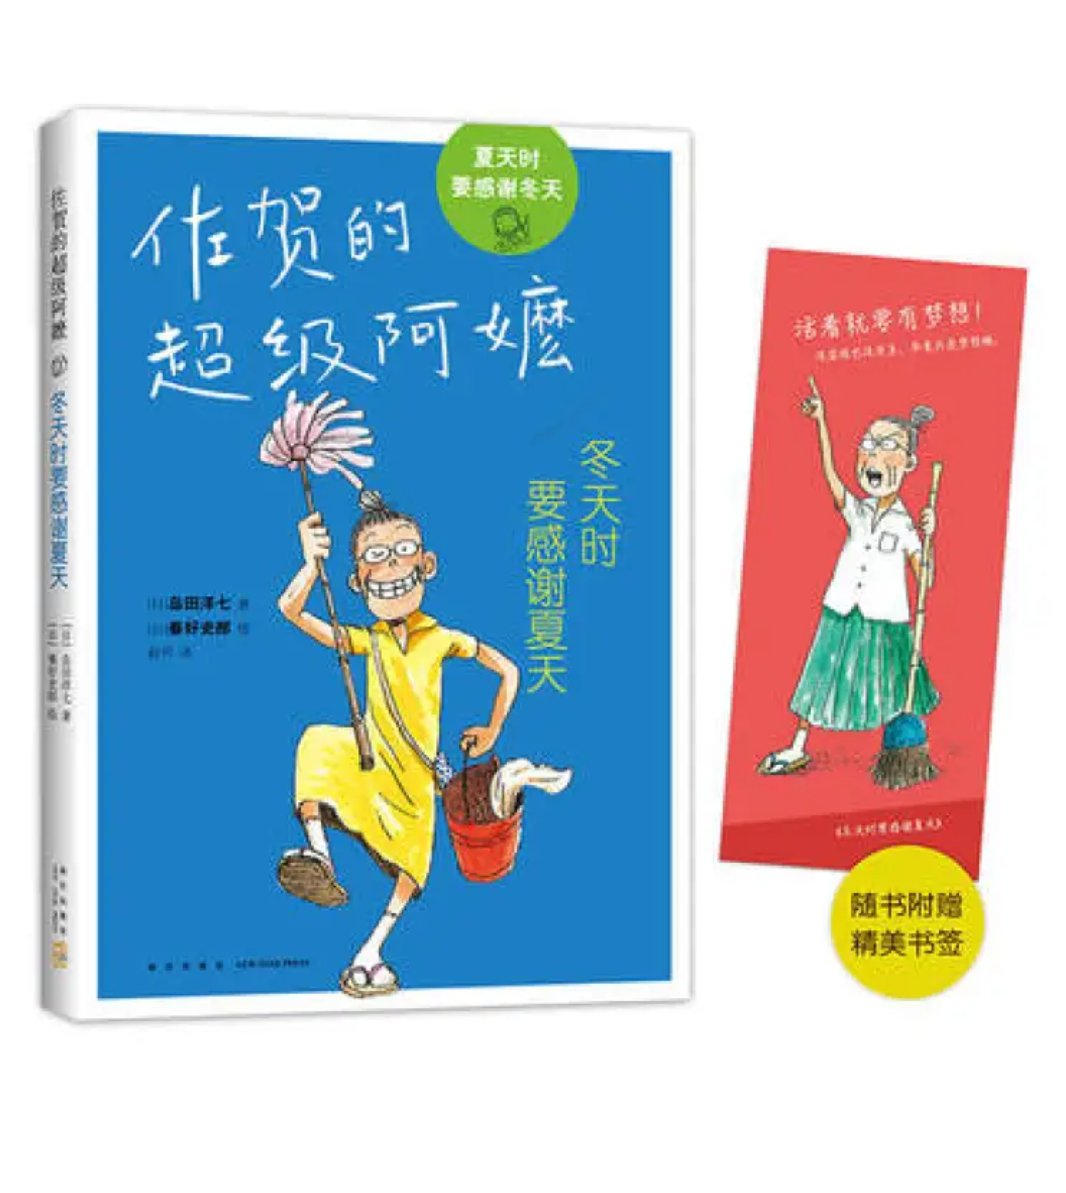 外婆虽然贫穷，却是一个了不起的人！感动日本各地的《佐贺的超级阿嬷》搭配有趣的插图，带领孩子走进阿嬷的世界。